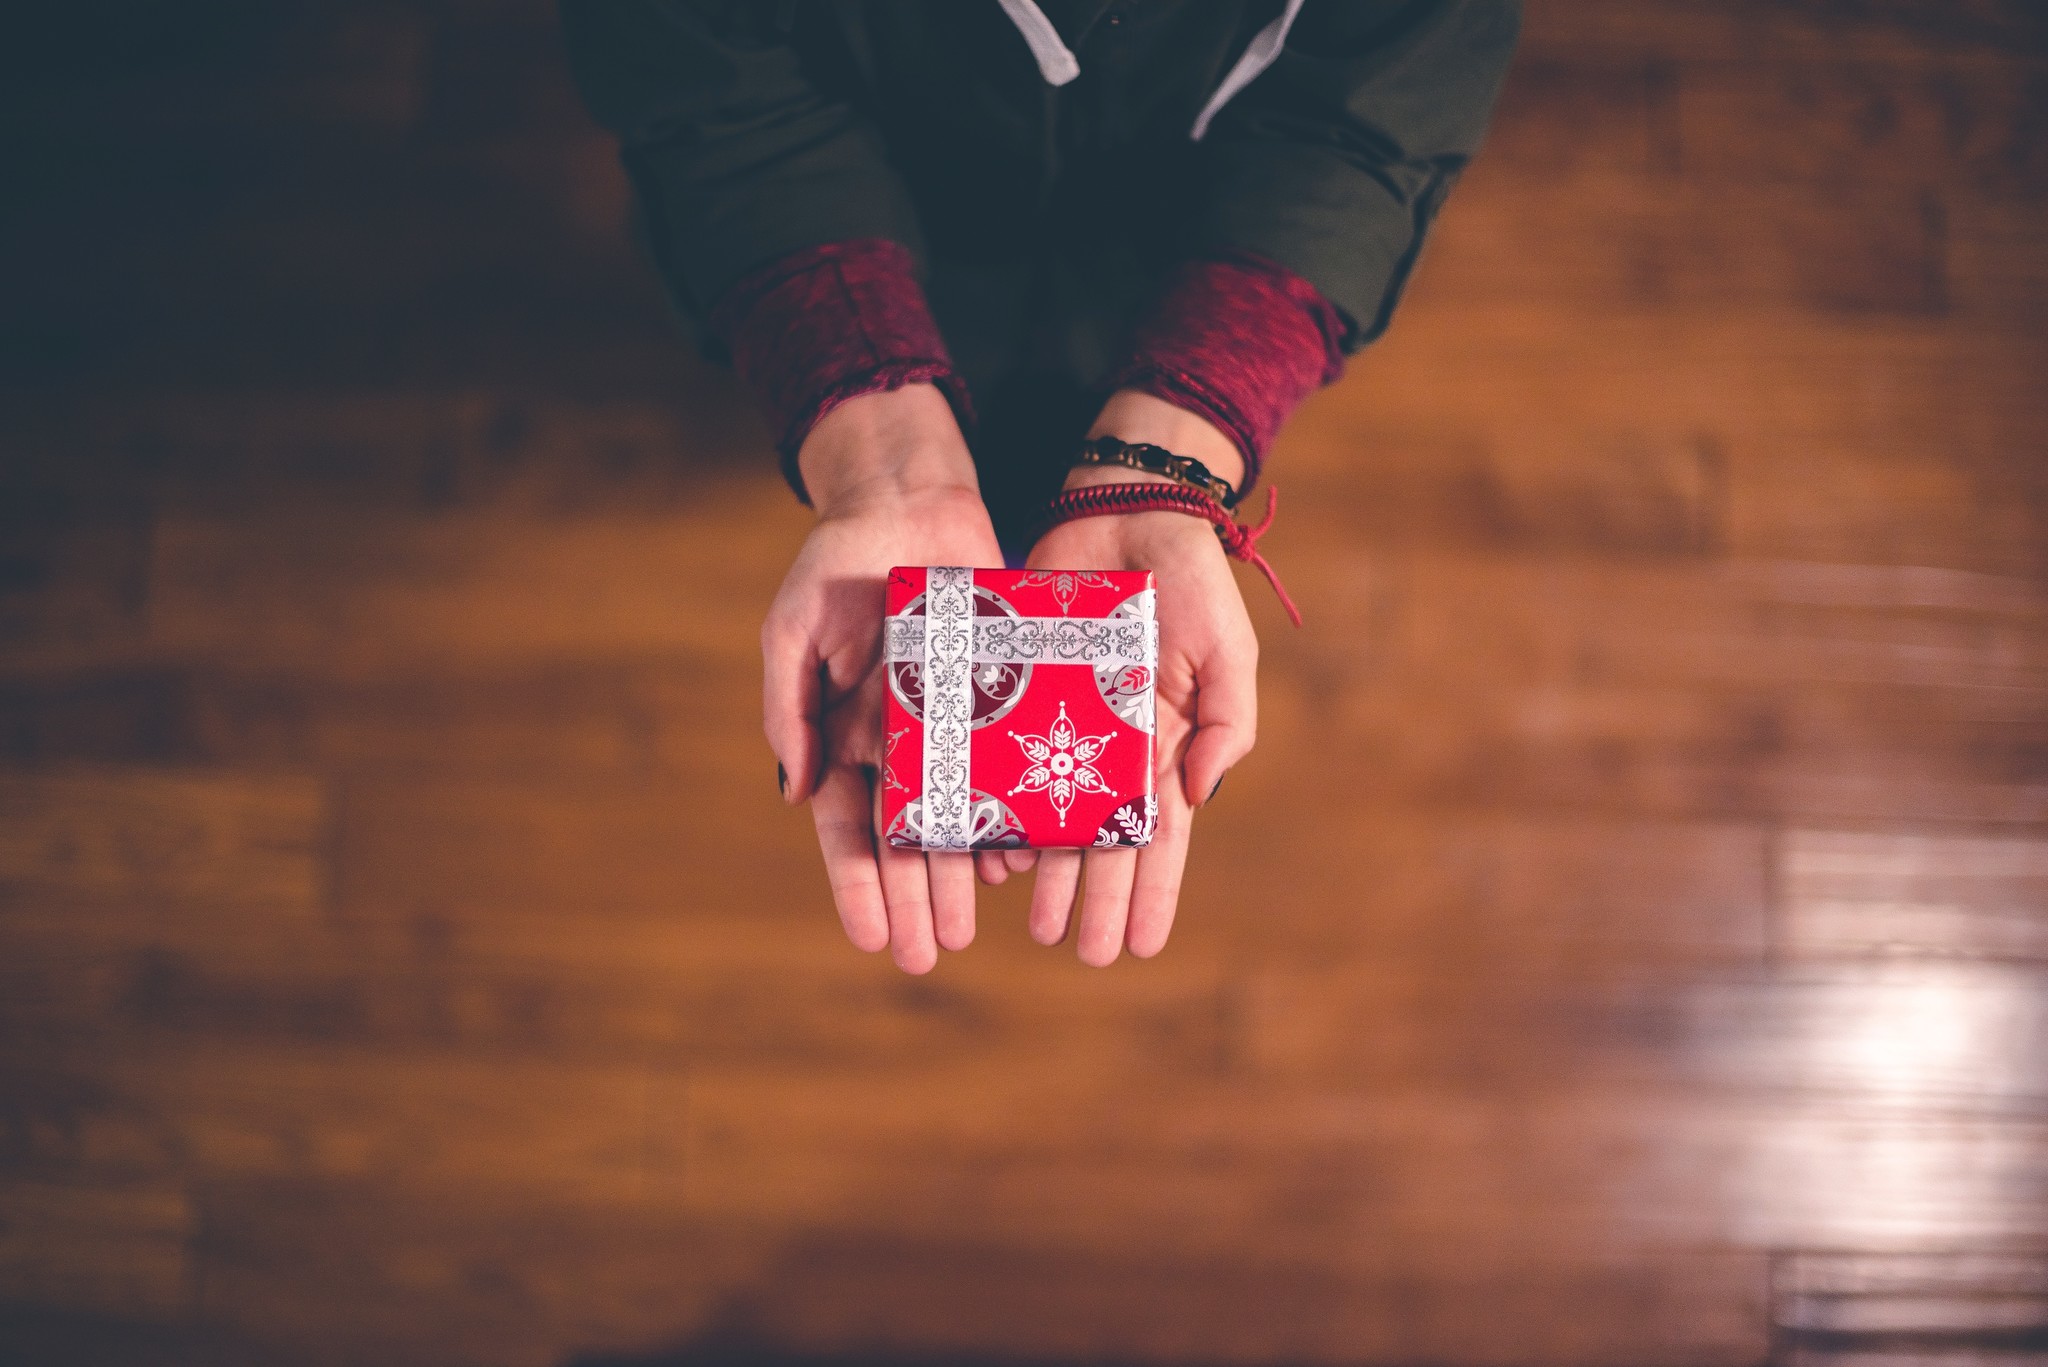 kunstmest ritme Groot universum Hoe kies je een goed cadeau? | Kerstpakkettenkiezer.nl -  Kerstpakkettenkiezer.nl